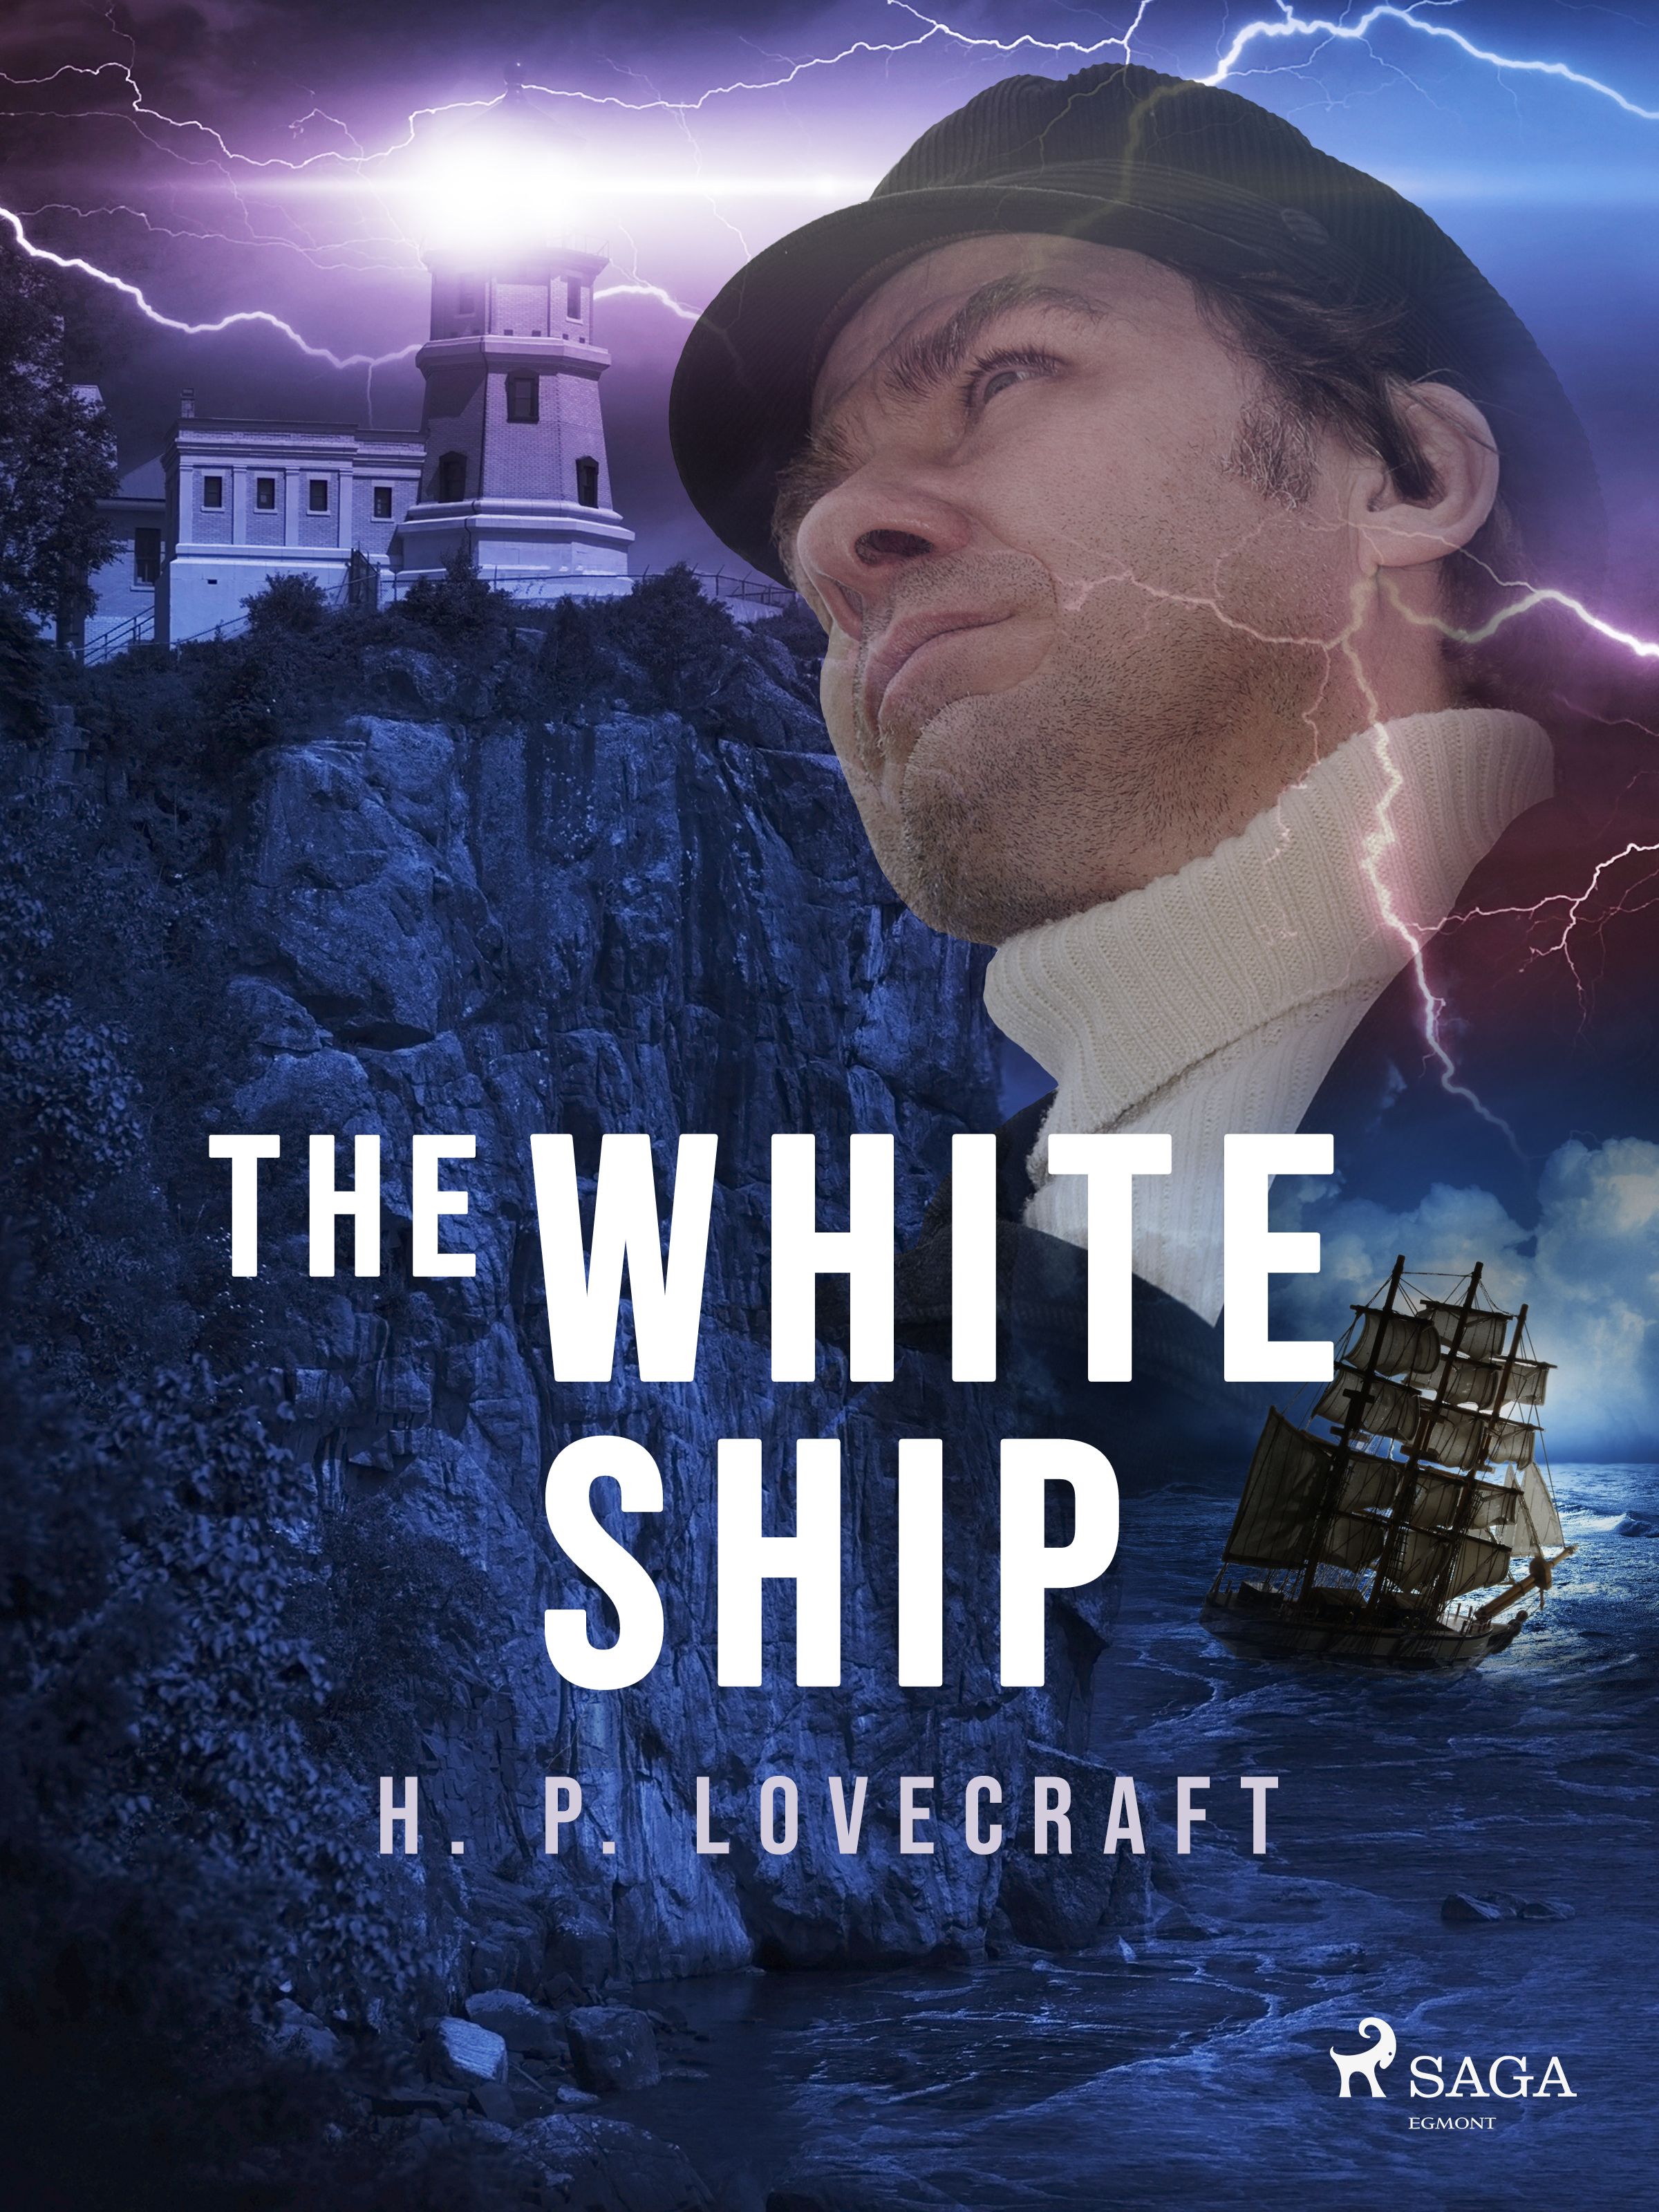 The White Ship, e-bog af H. P. Lovecraft